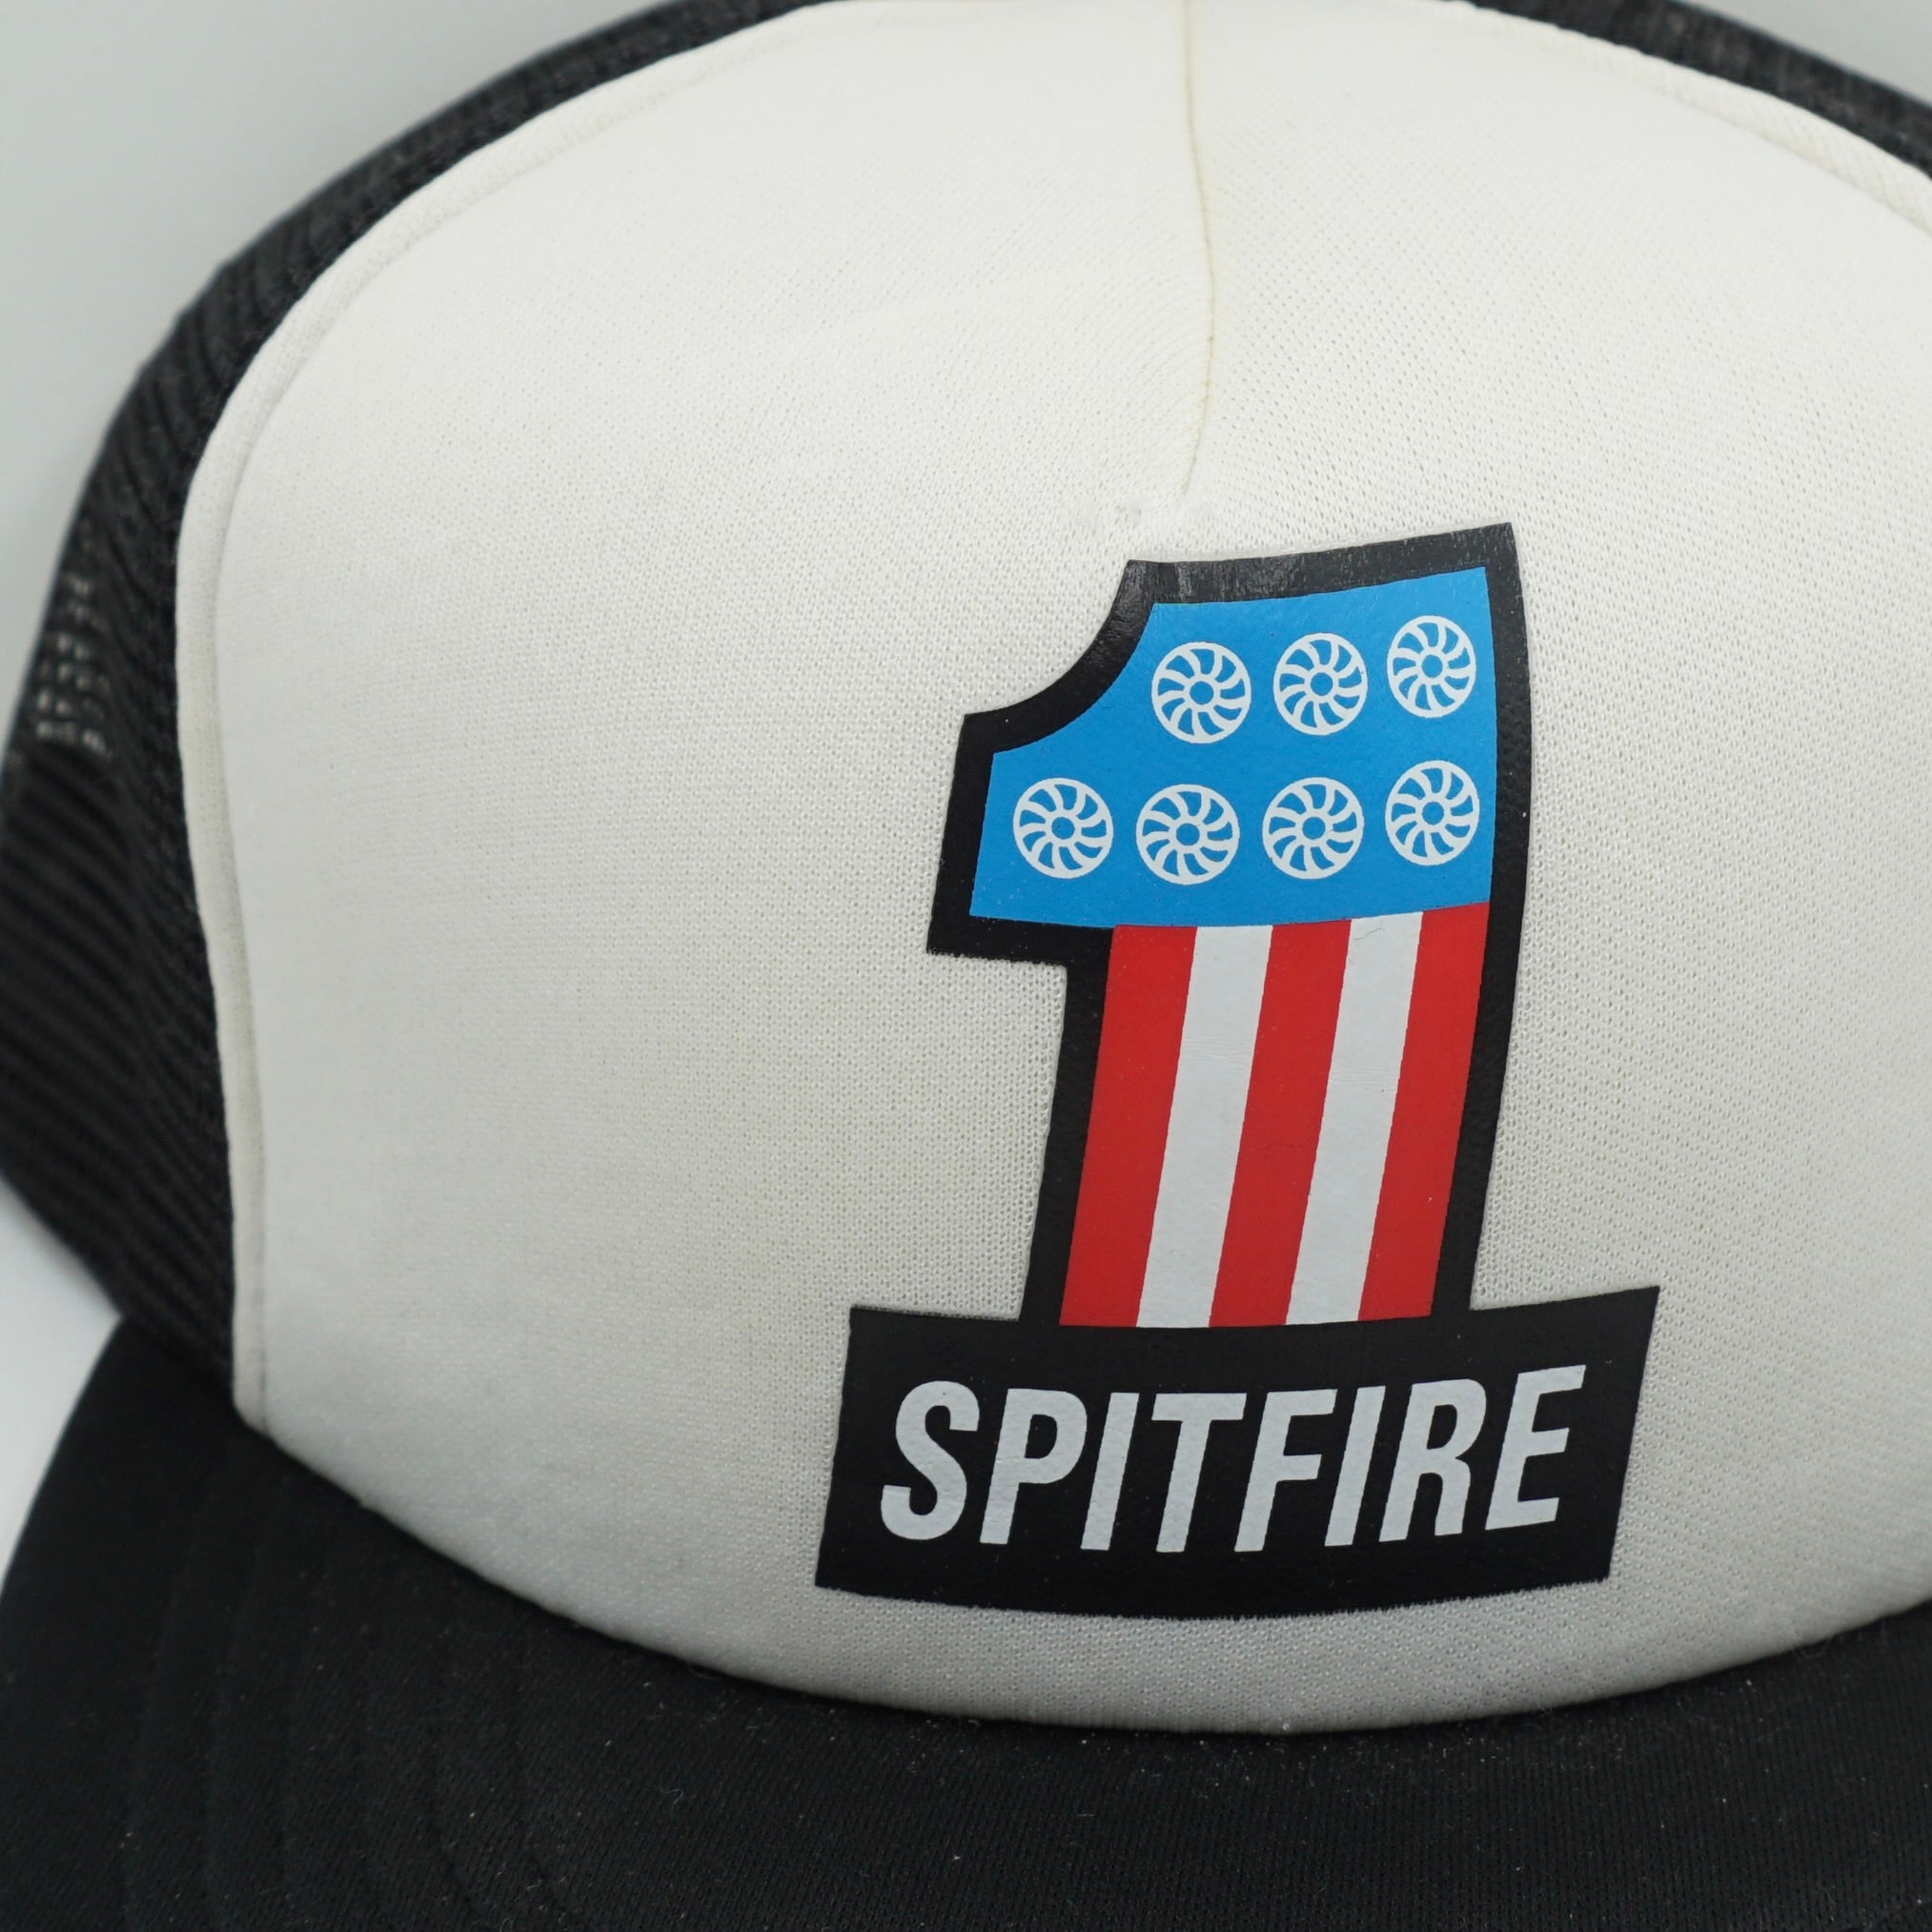 Spitfire Trucker Cap